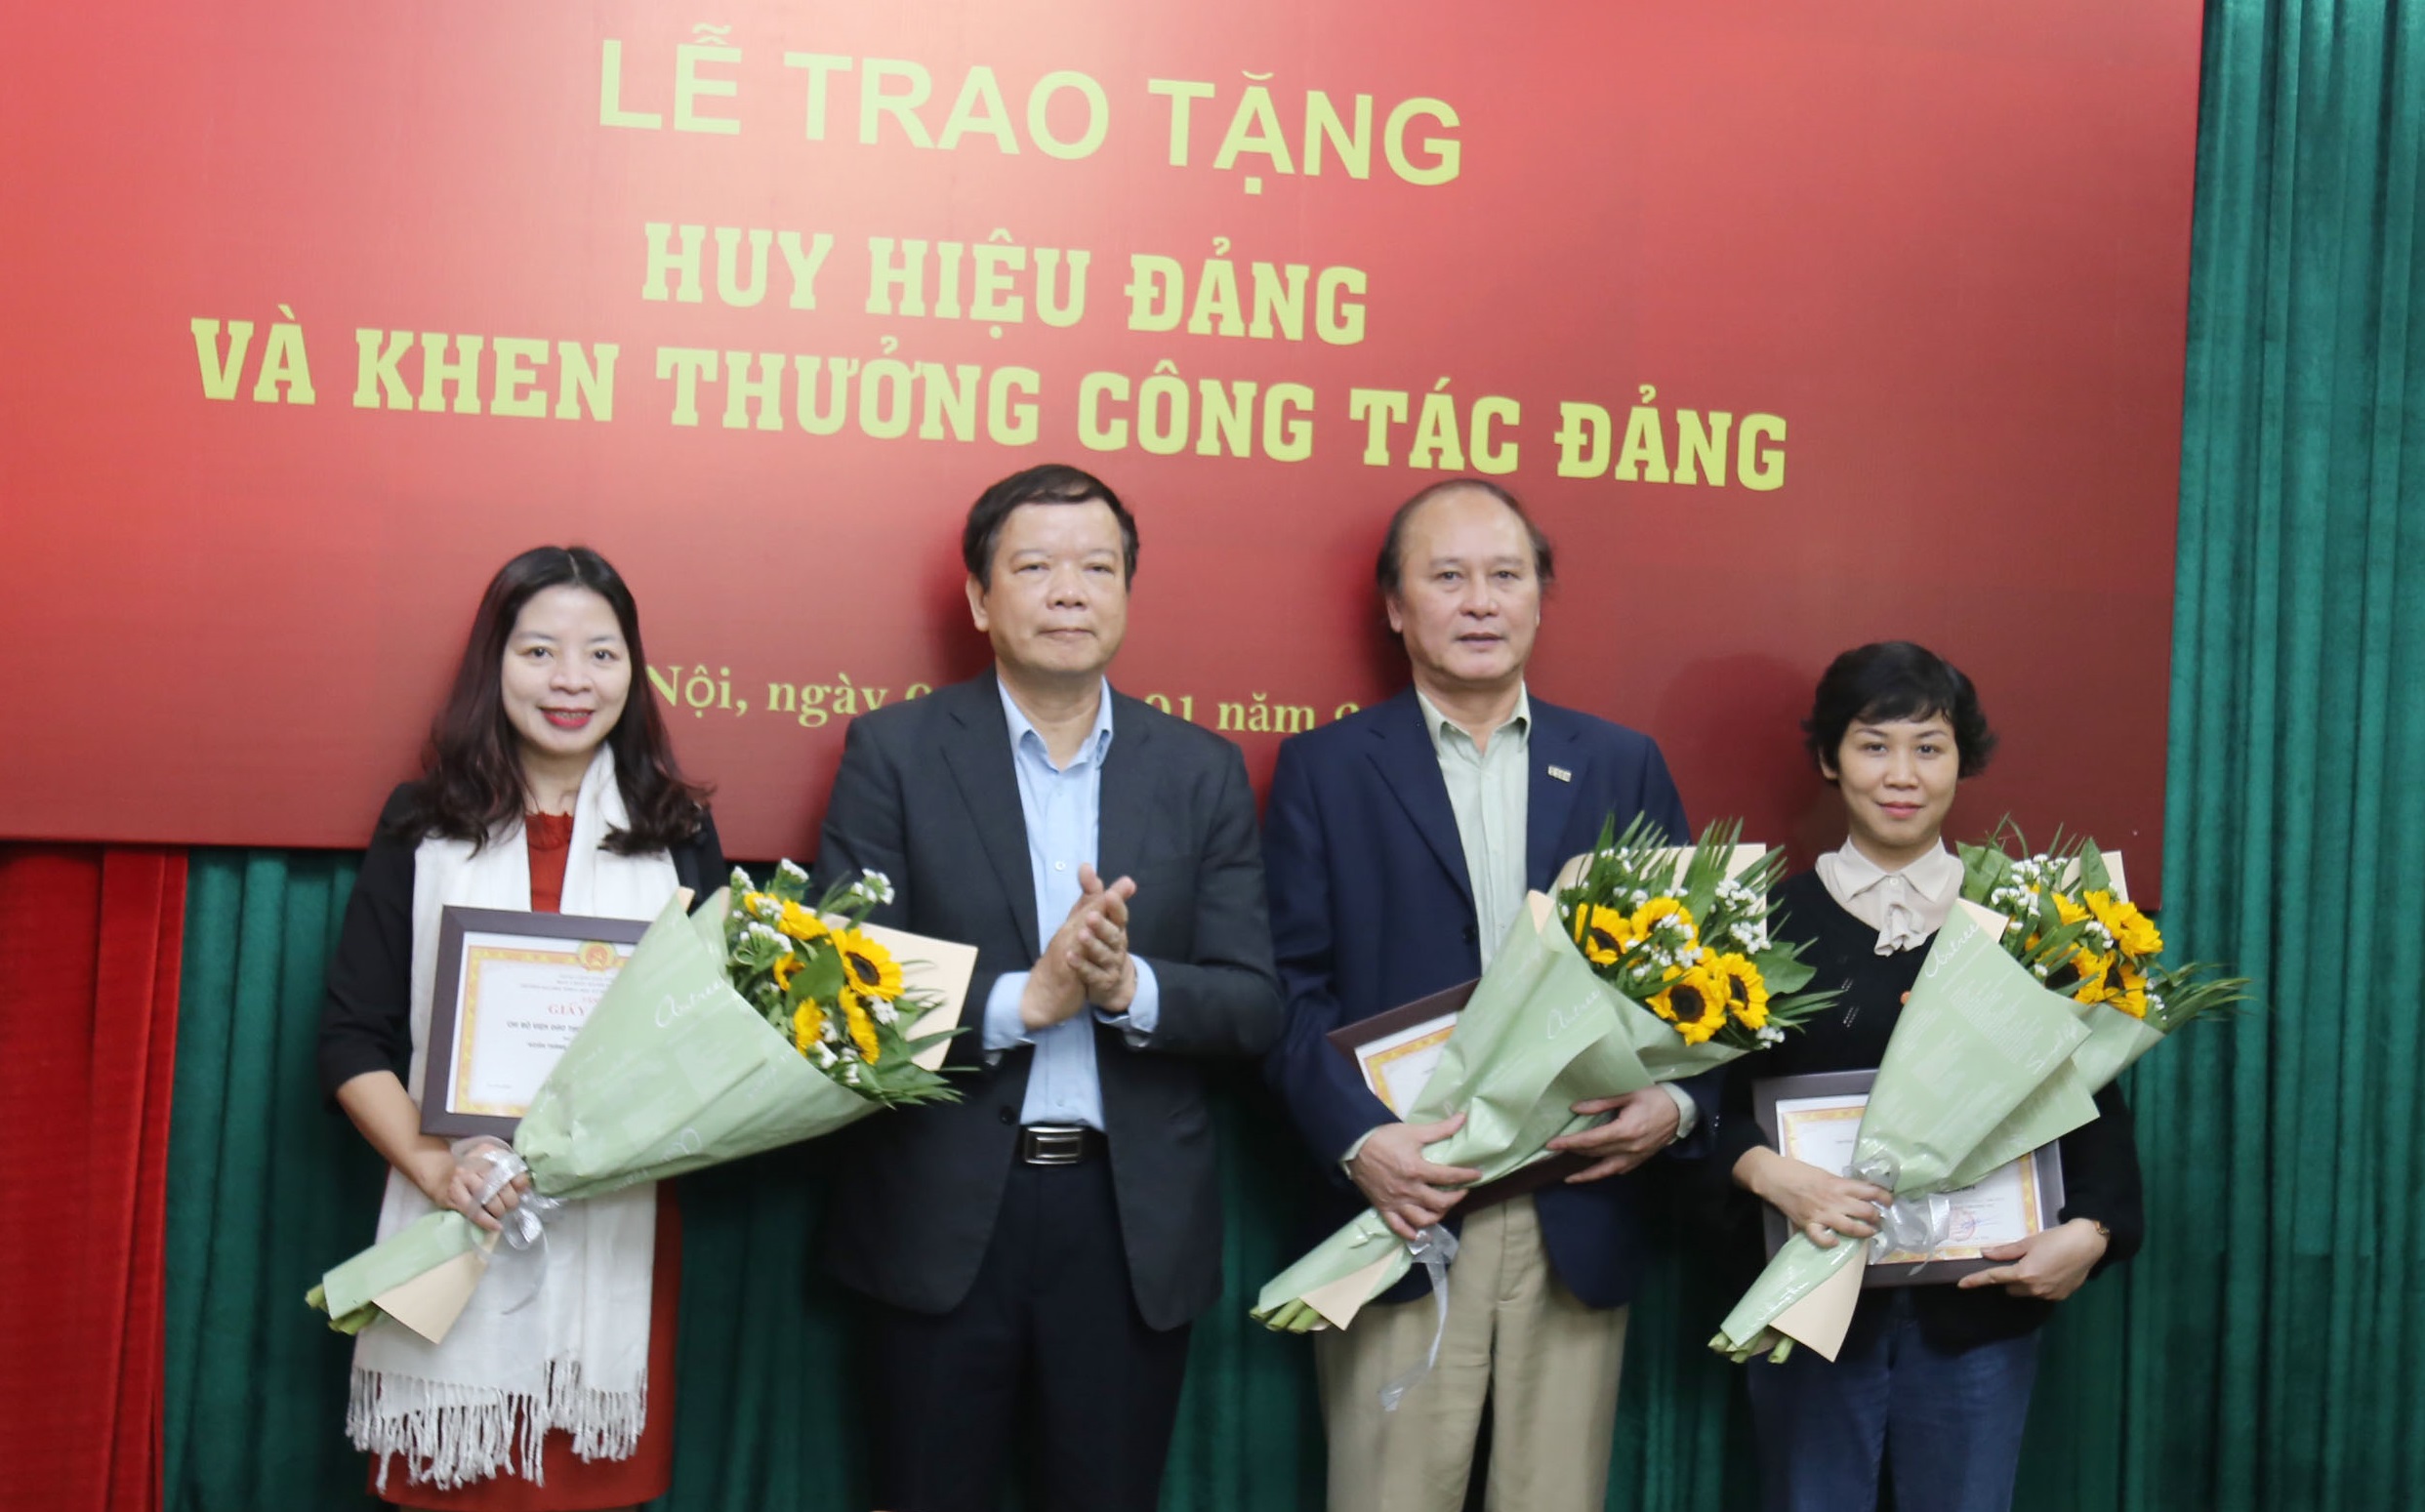 Trao tặng Huy hiệu Đảng và khen thưởng công tác Đảng năm 2018